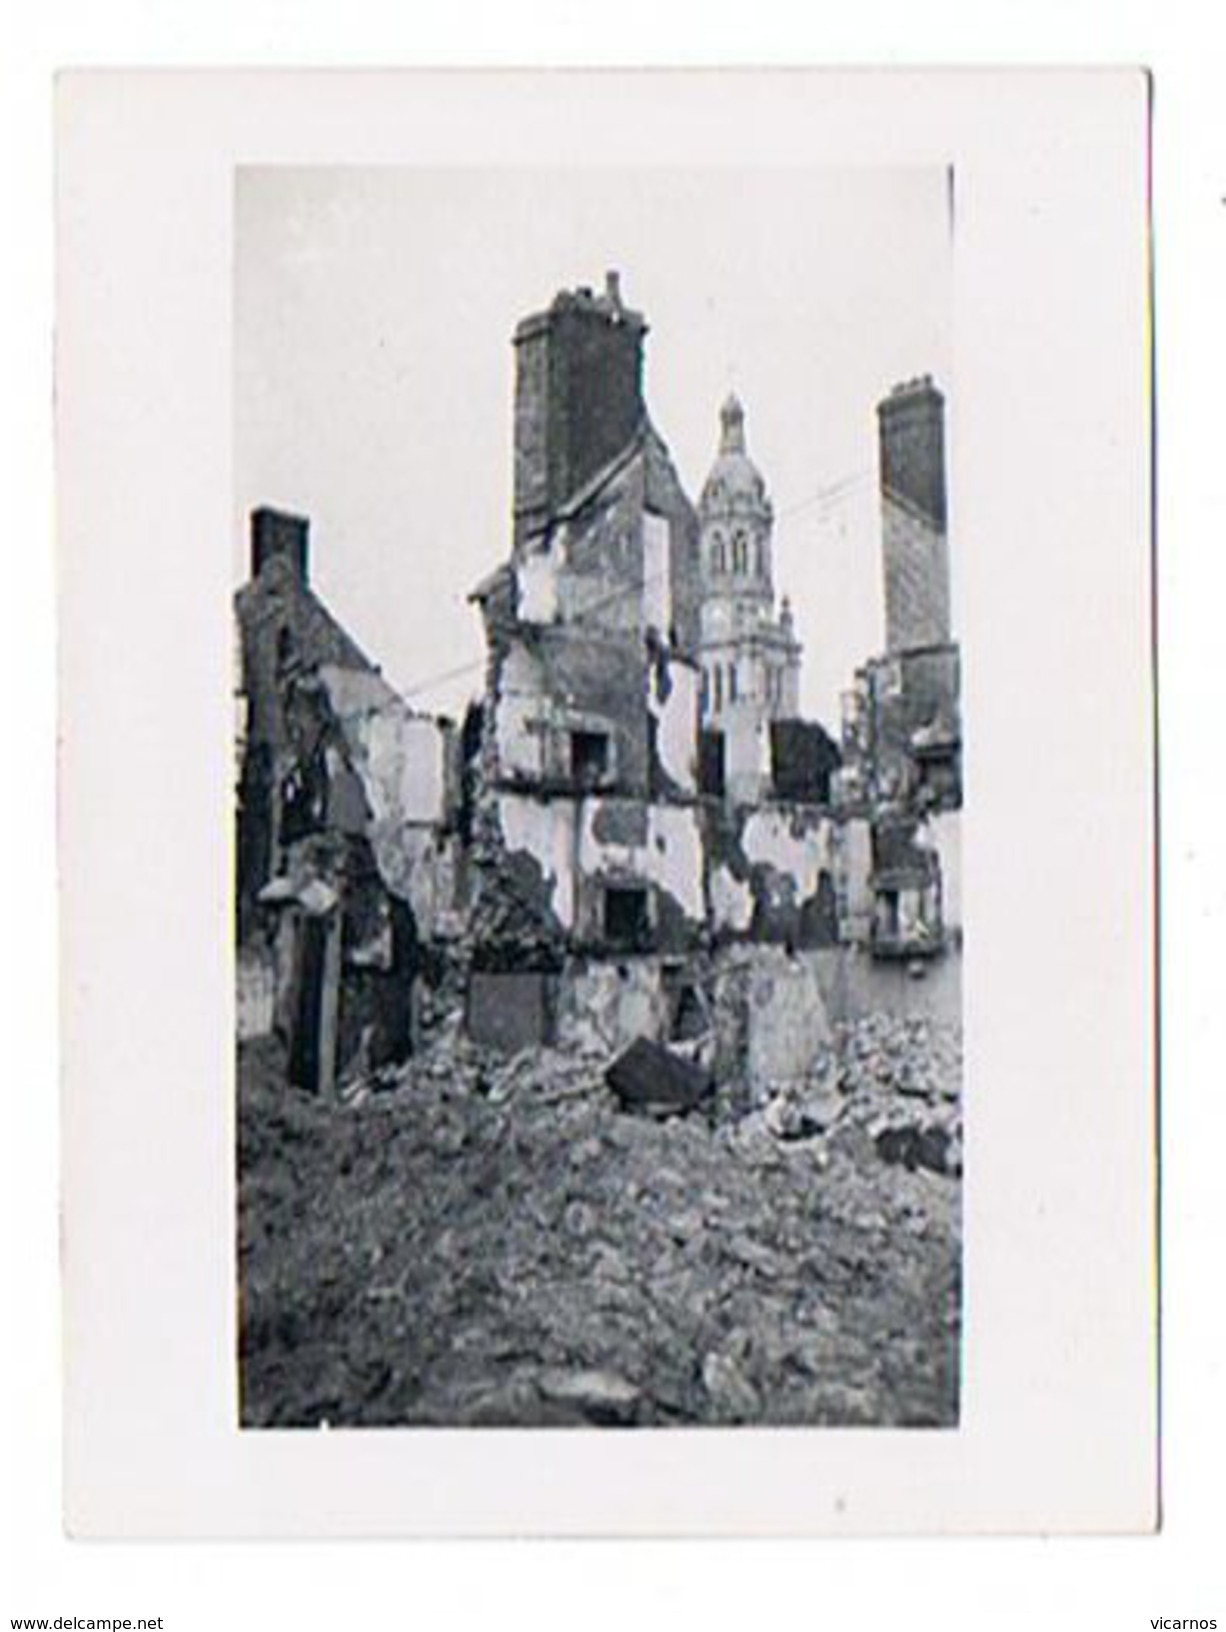 CARTE PHOTO AVRANCHES Lot de31 photos plus1photo sur Lolif au loin sur la dévastation de la ville par l'aviation en 1944